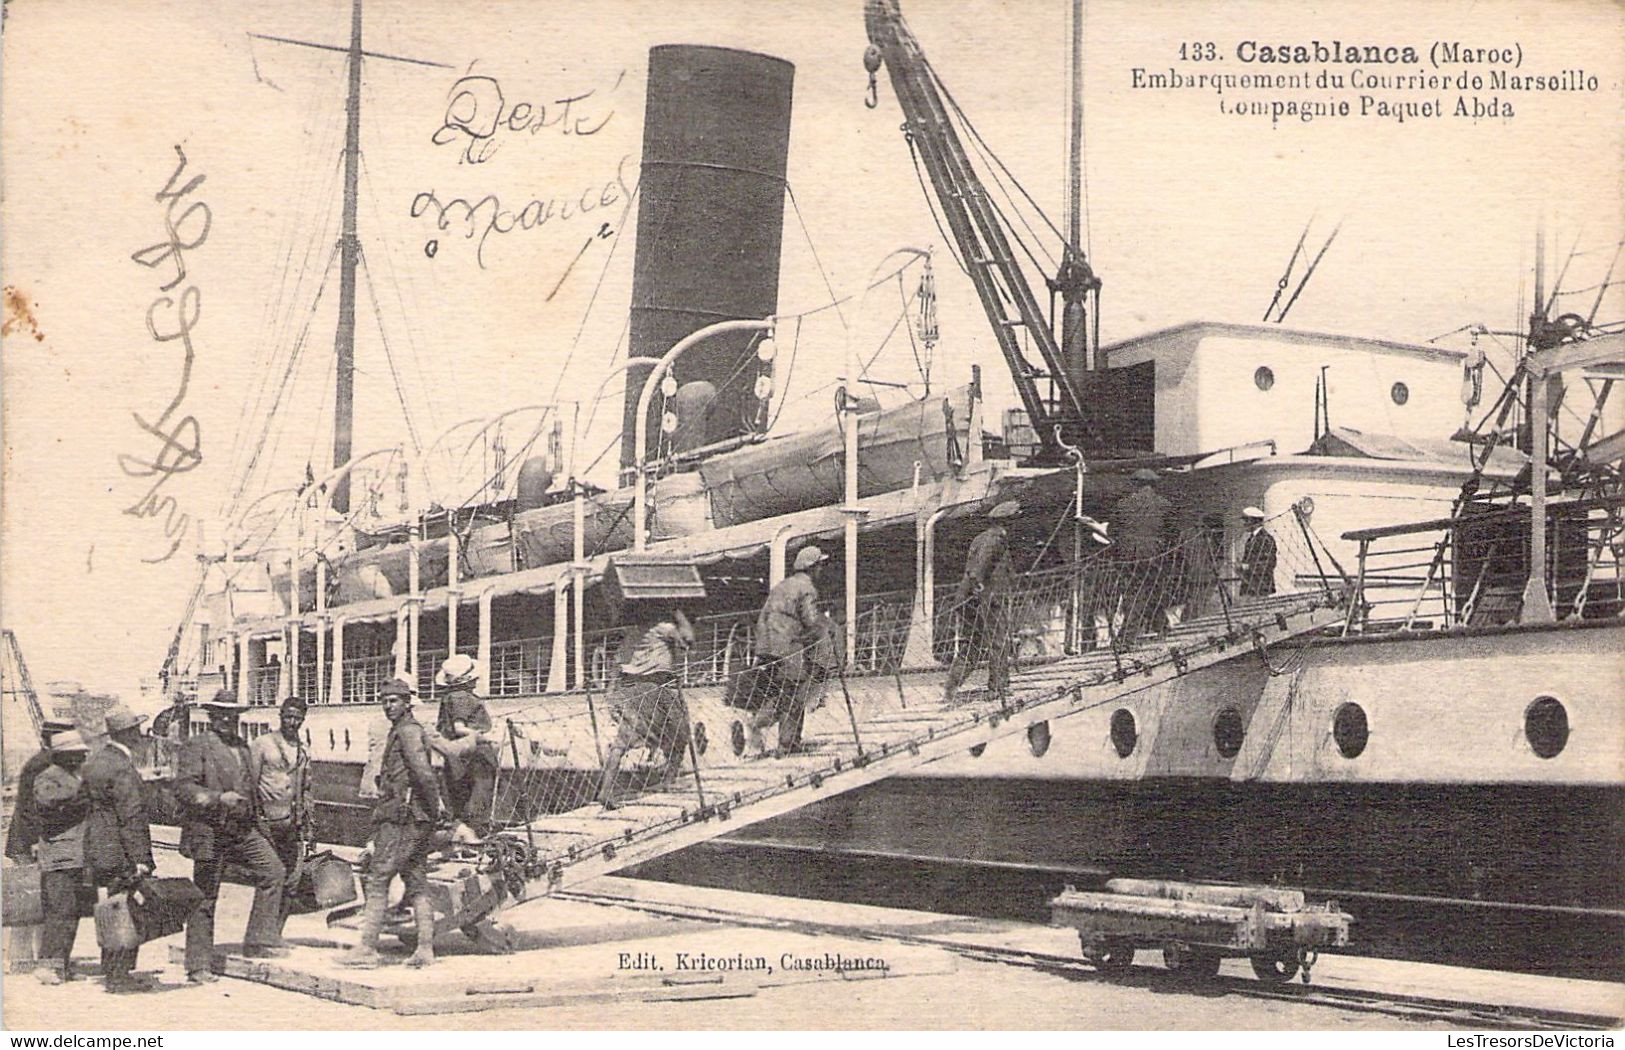 MAROC - CASABLANCA - Embarquement De Courrier De Marseille - Compagnie Paquet Abda - Carte Postale Ancienne - Casablanca